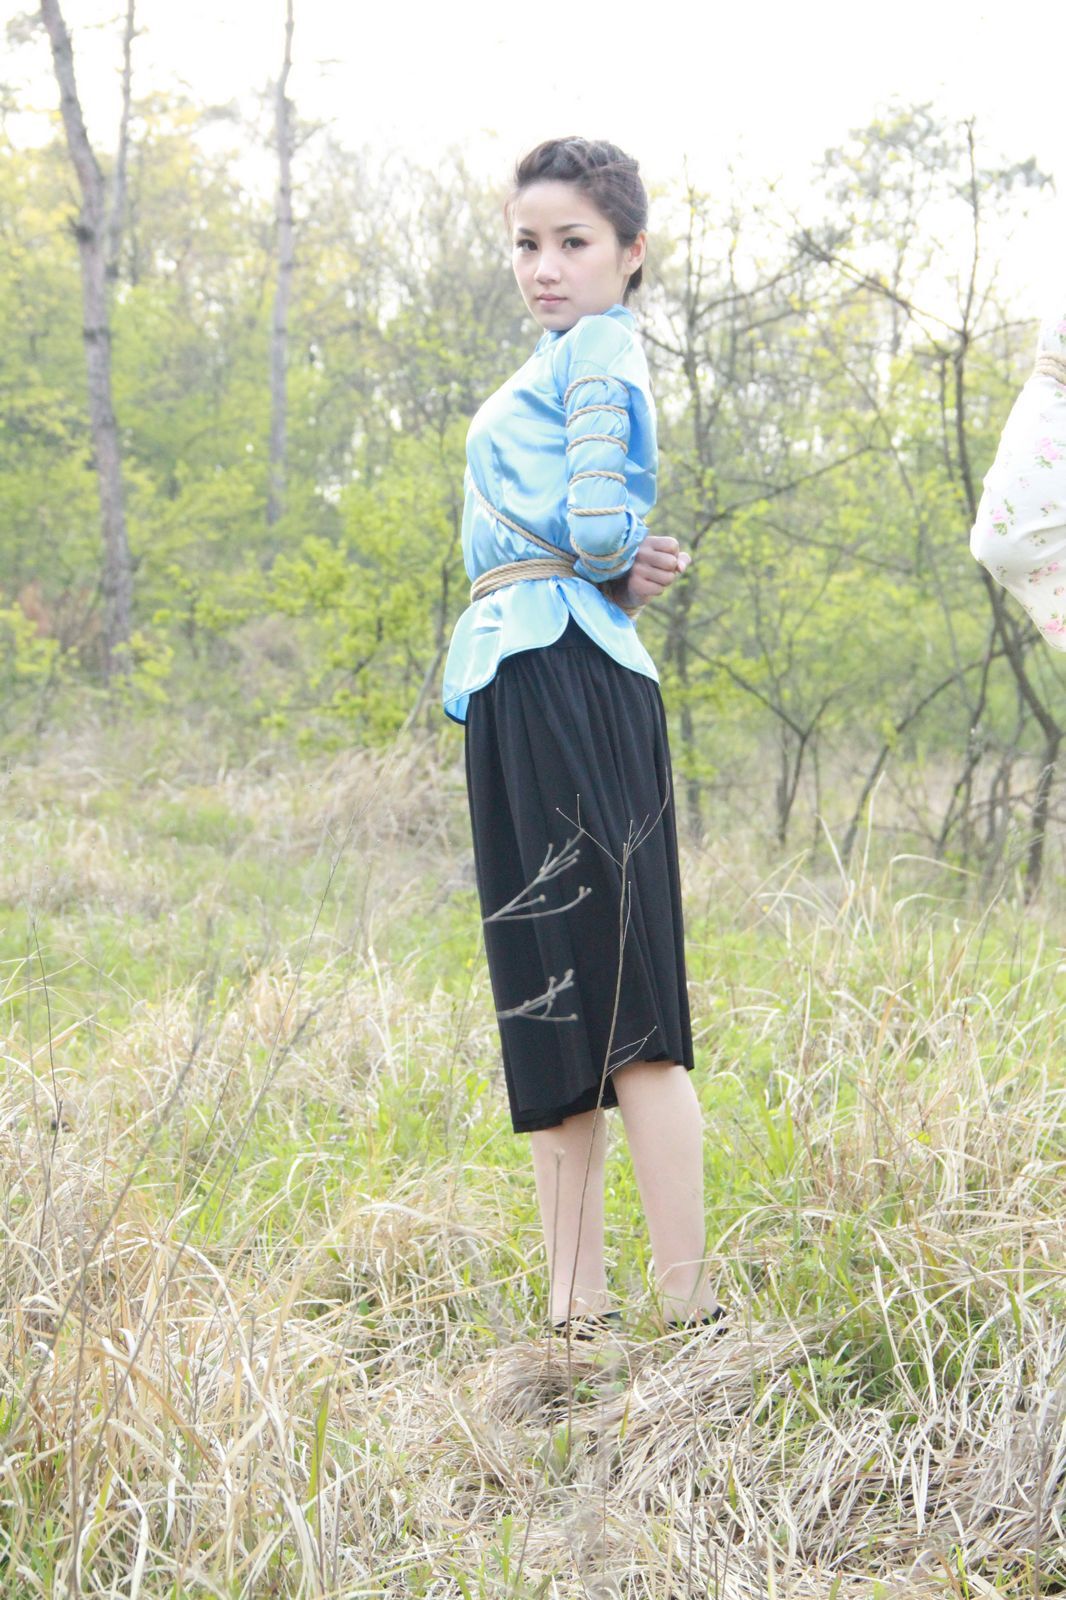 [神艺缘] 2010.04.24 No.017 模特 甜甜,菲菲,娜娜